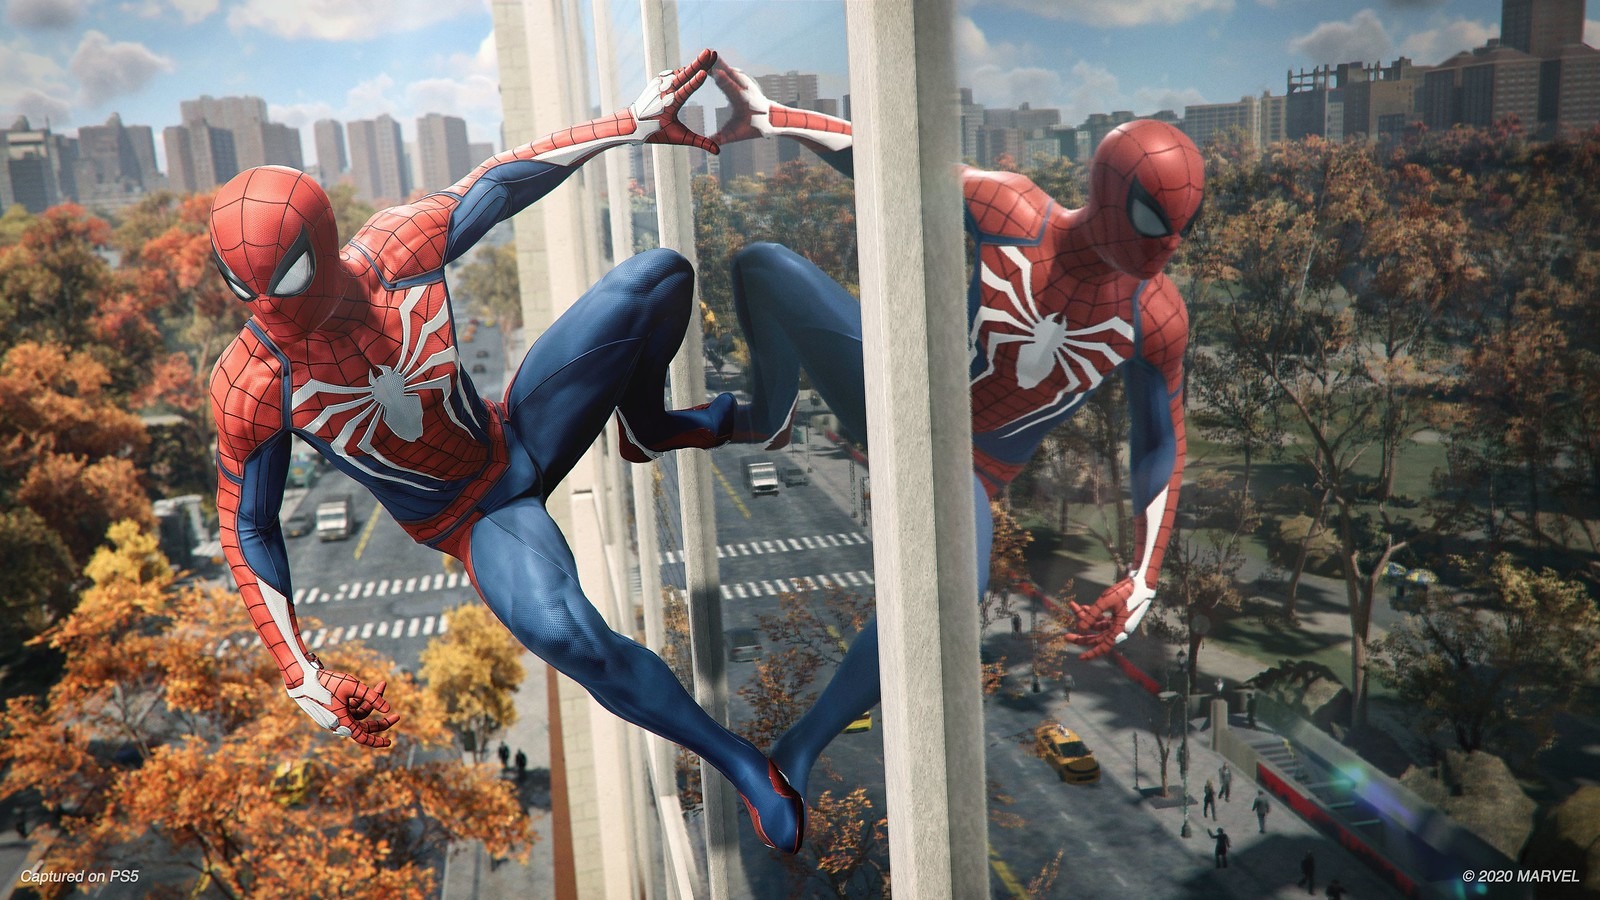 リマスター版 Marvel S Spider Man 60fpsパフォーマンスモード映像公開 ゲームのこだわりなどの詳細も明らかに Game Spark 国内 海外ゲーム情報サイト